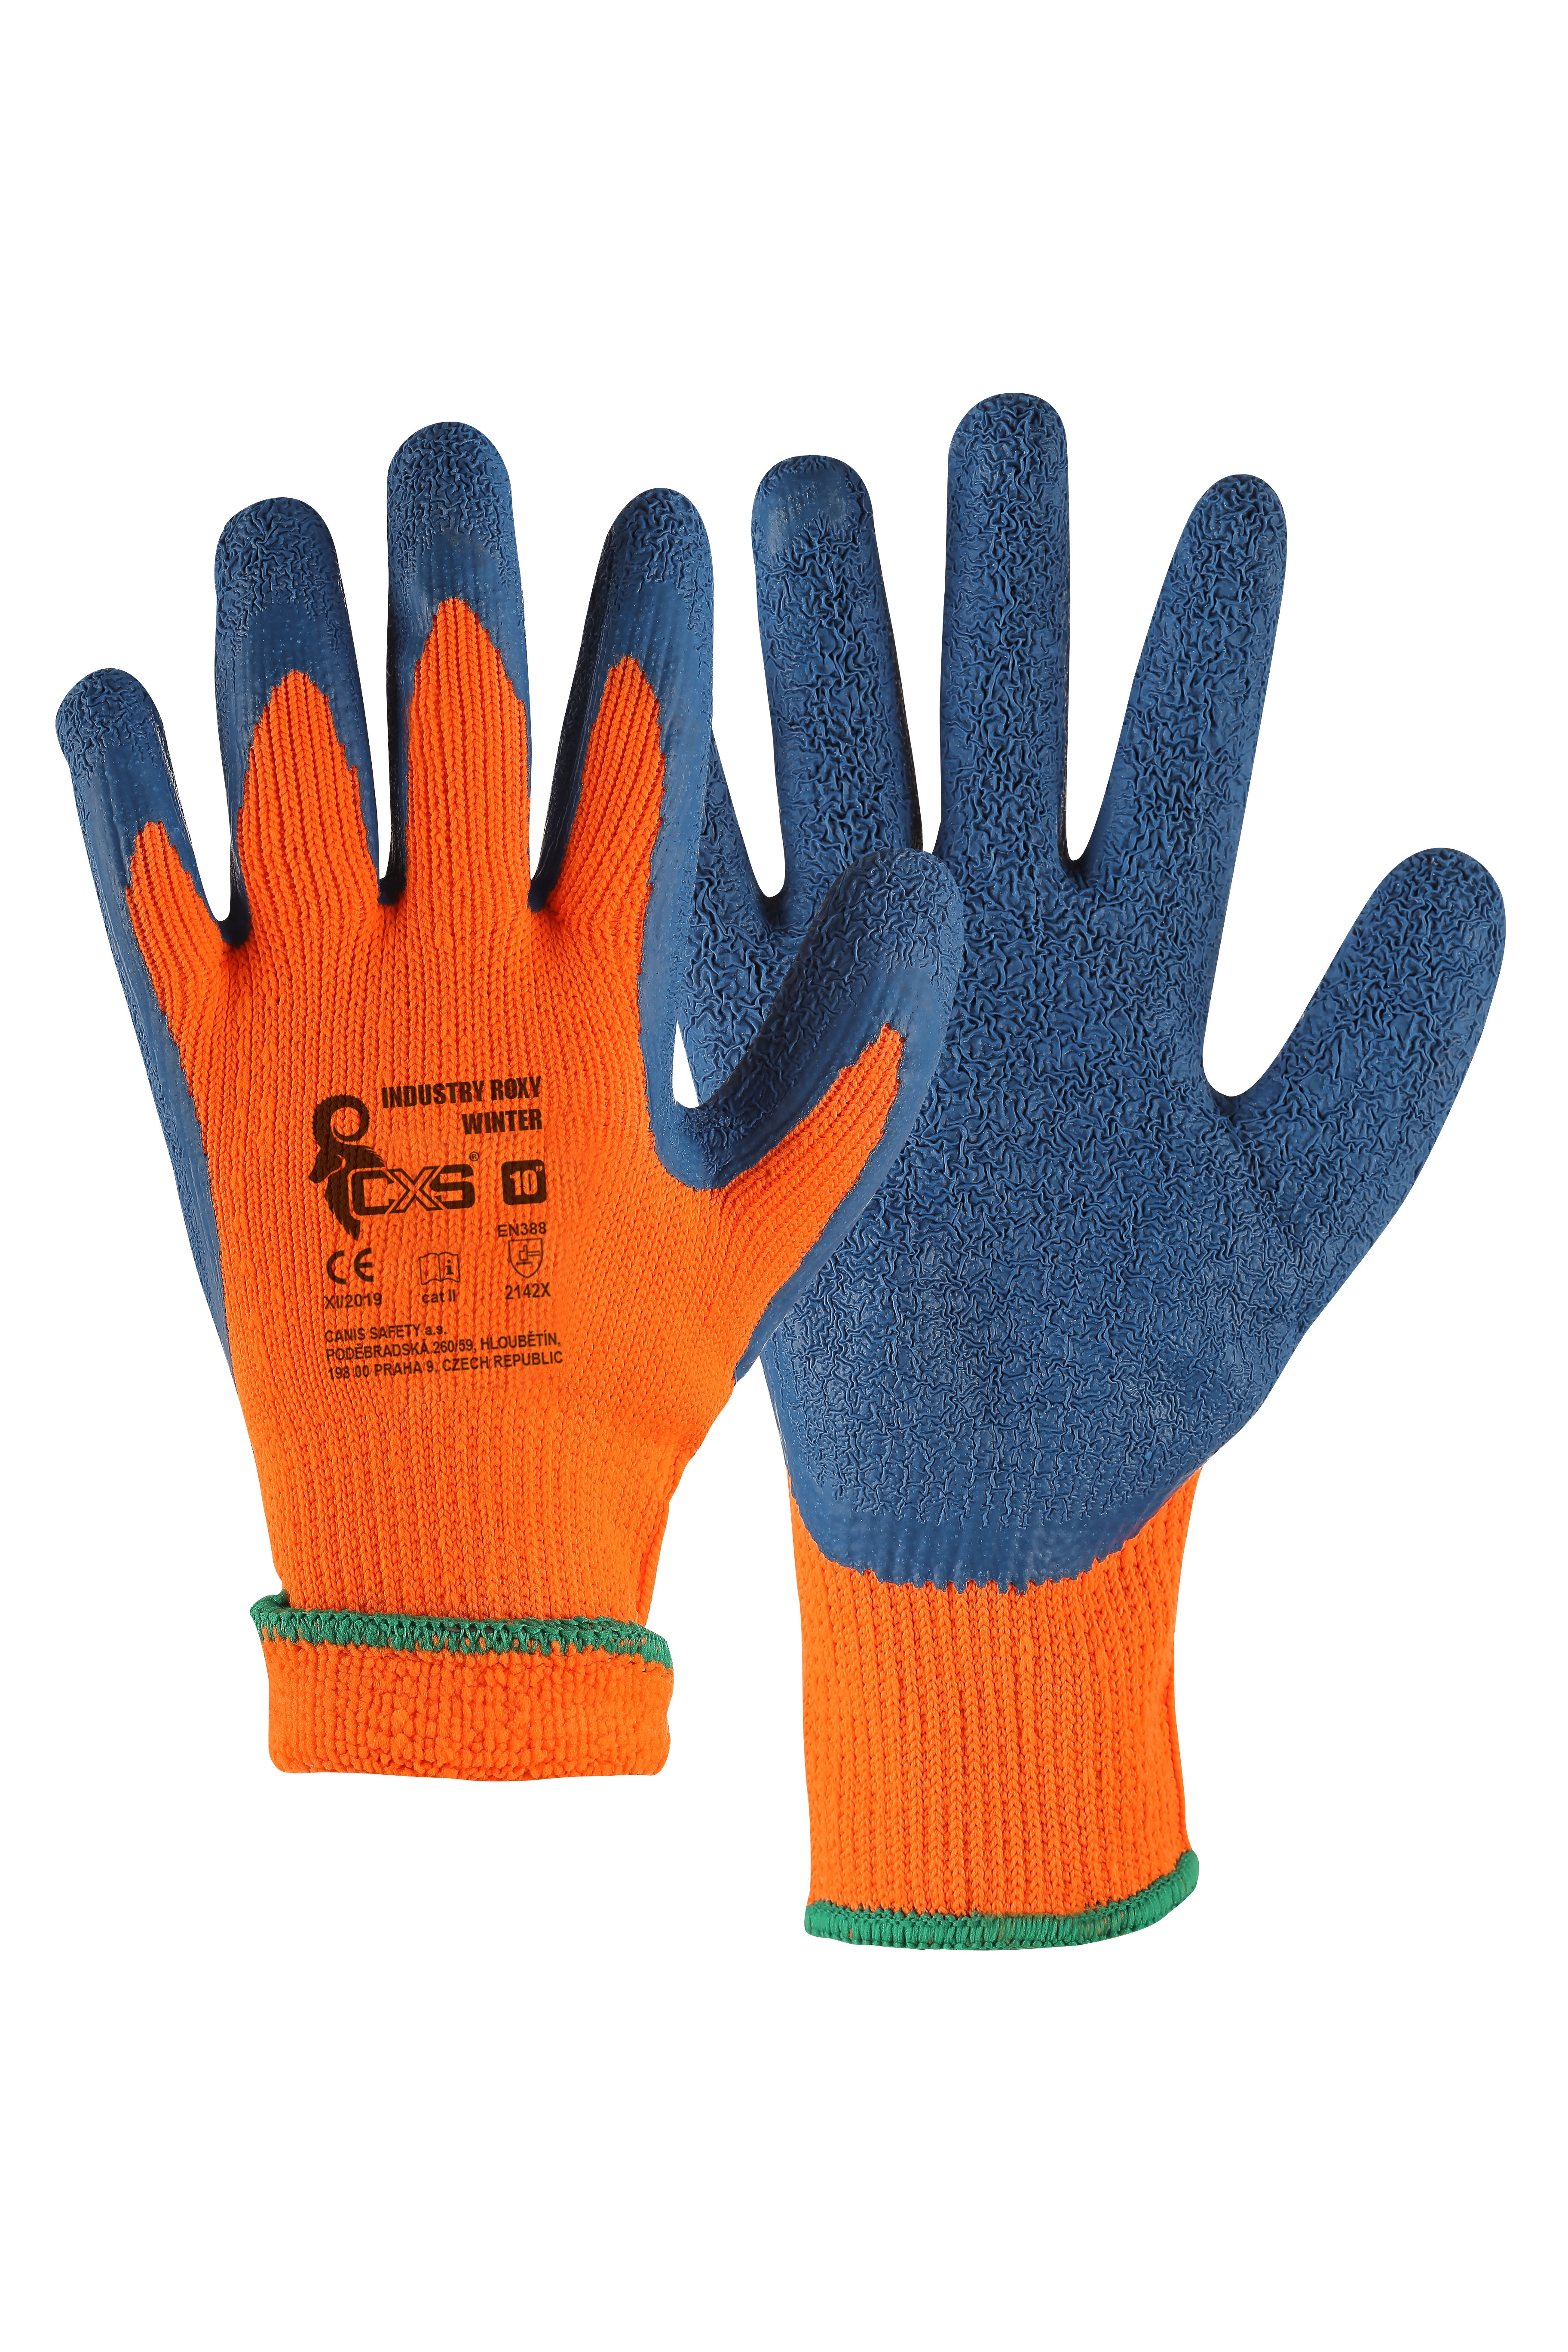 rukavice Industry Roxy Winter, zimní, máčené v latexu, velikost 10 0.09 Kg TOP Sklad4 606065 605